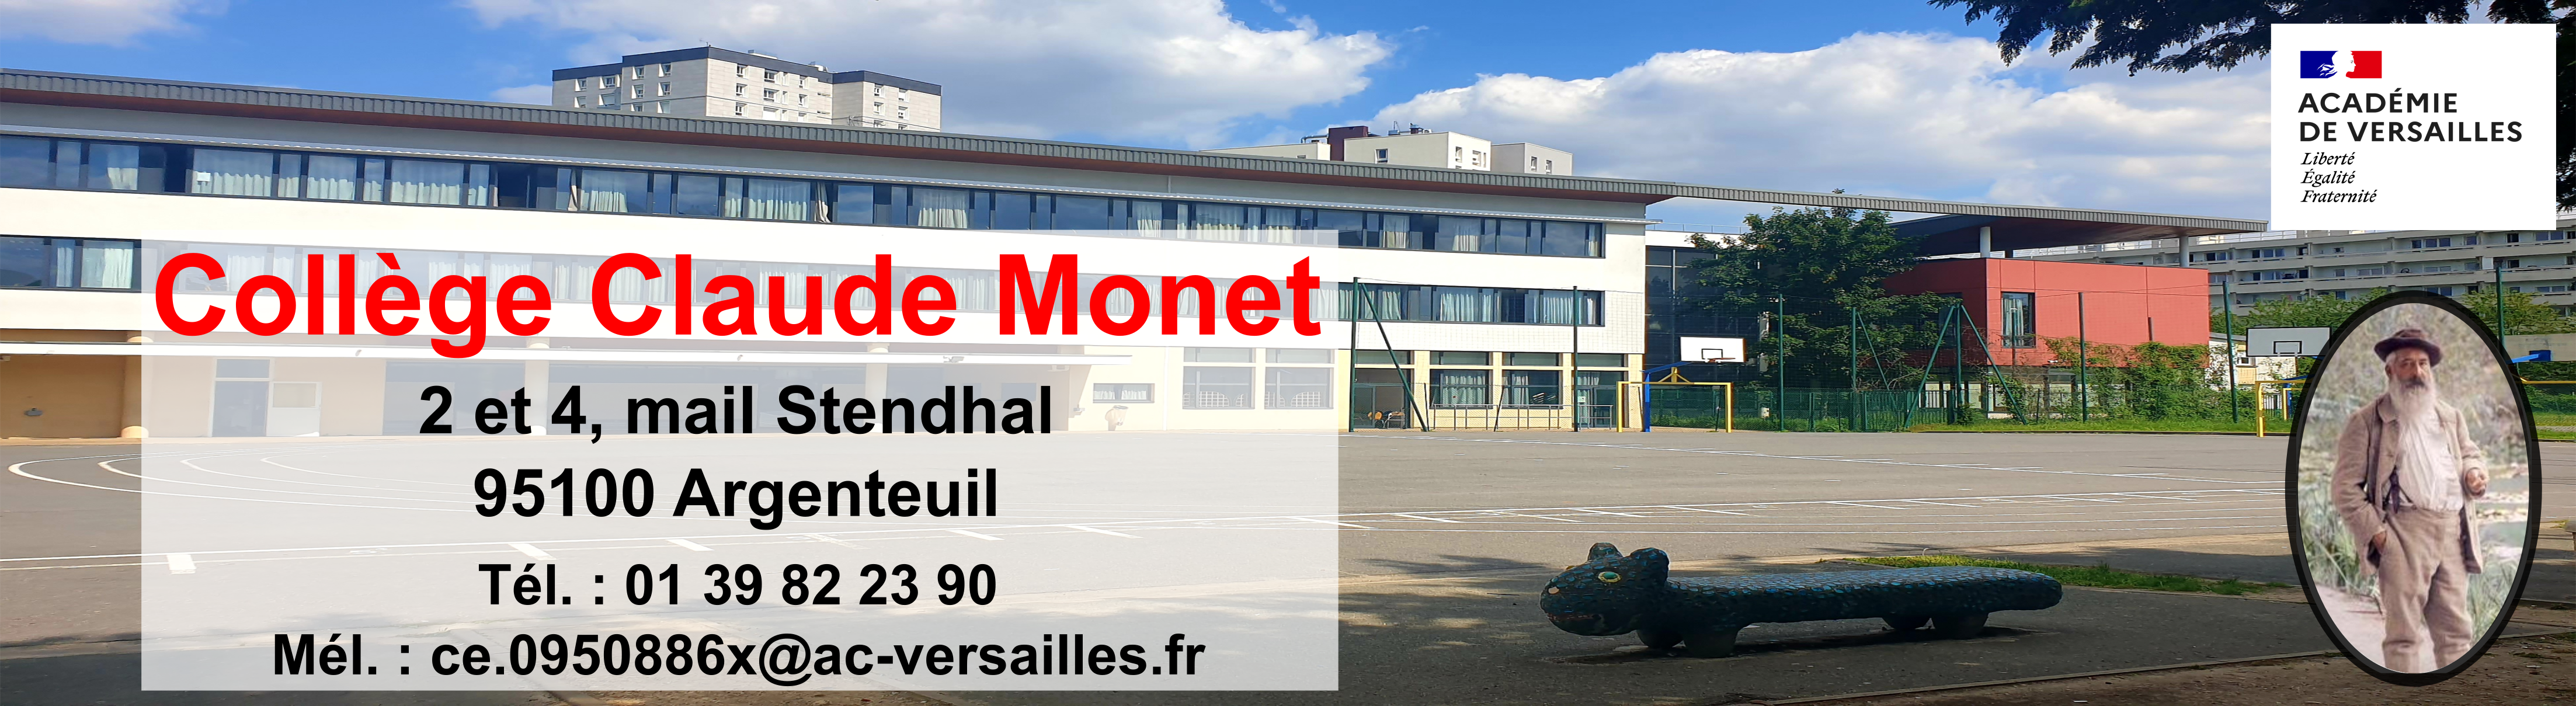 Collège Claude Monet Argenteuil